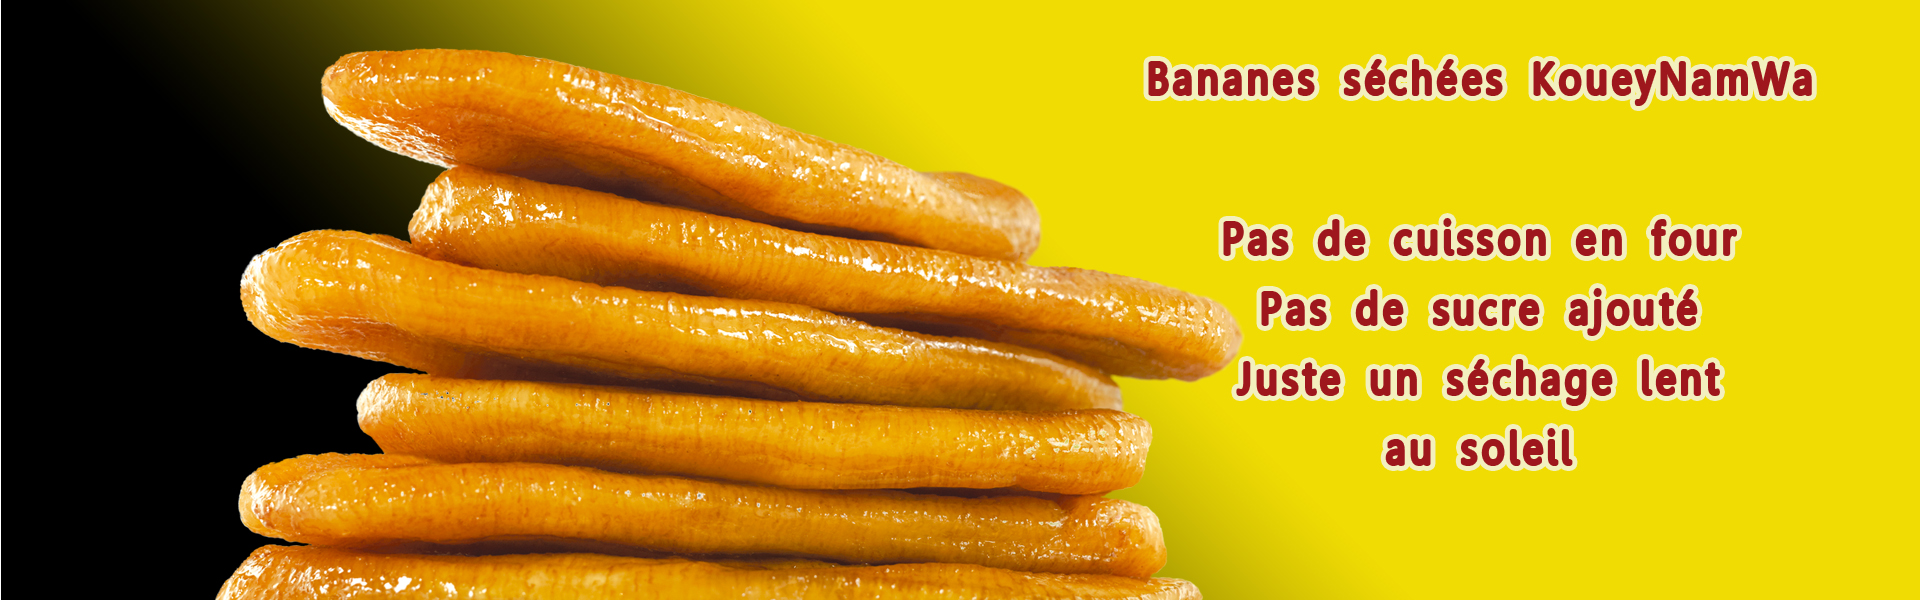 Bananes séchées KoueyNamWa : pas de cuisson en four, pas de sucre ajouté, juste un séchage lent au soleil.